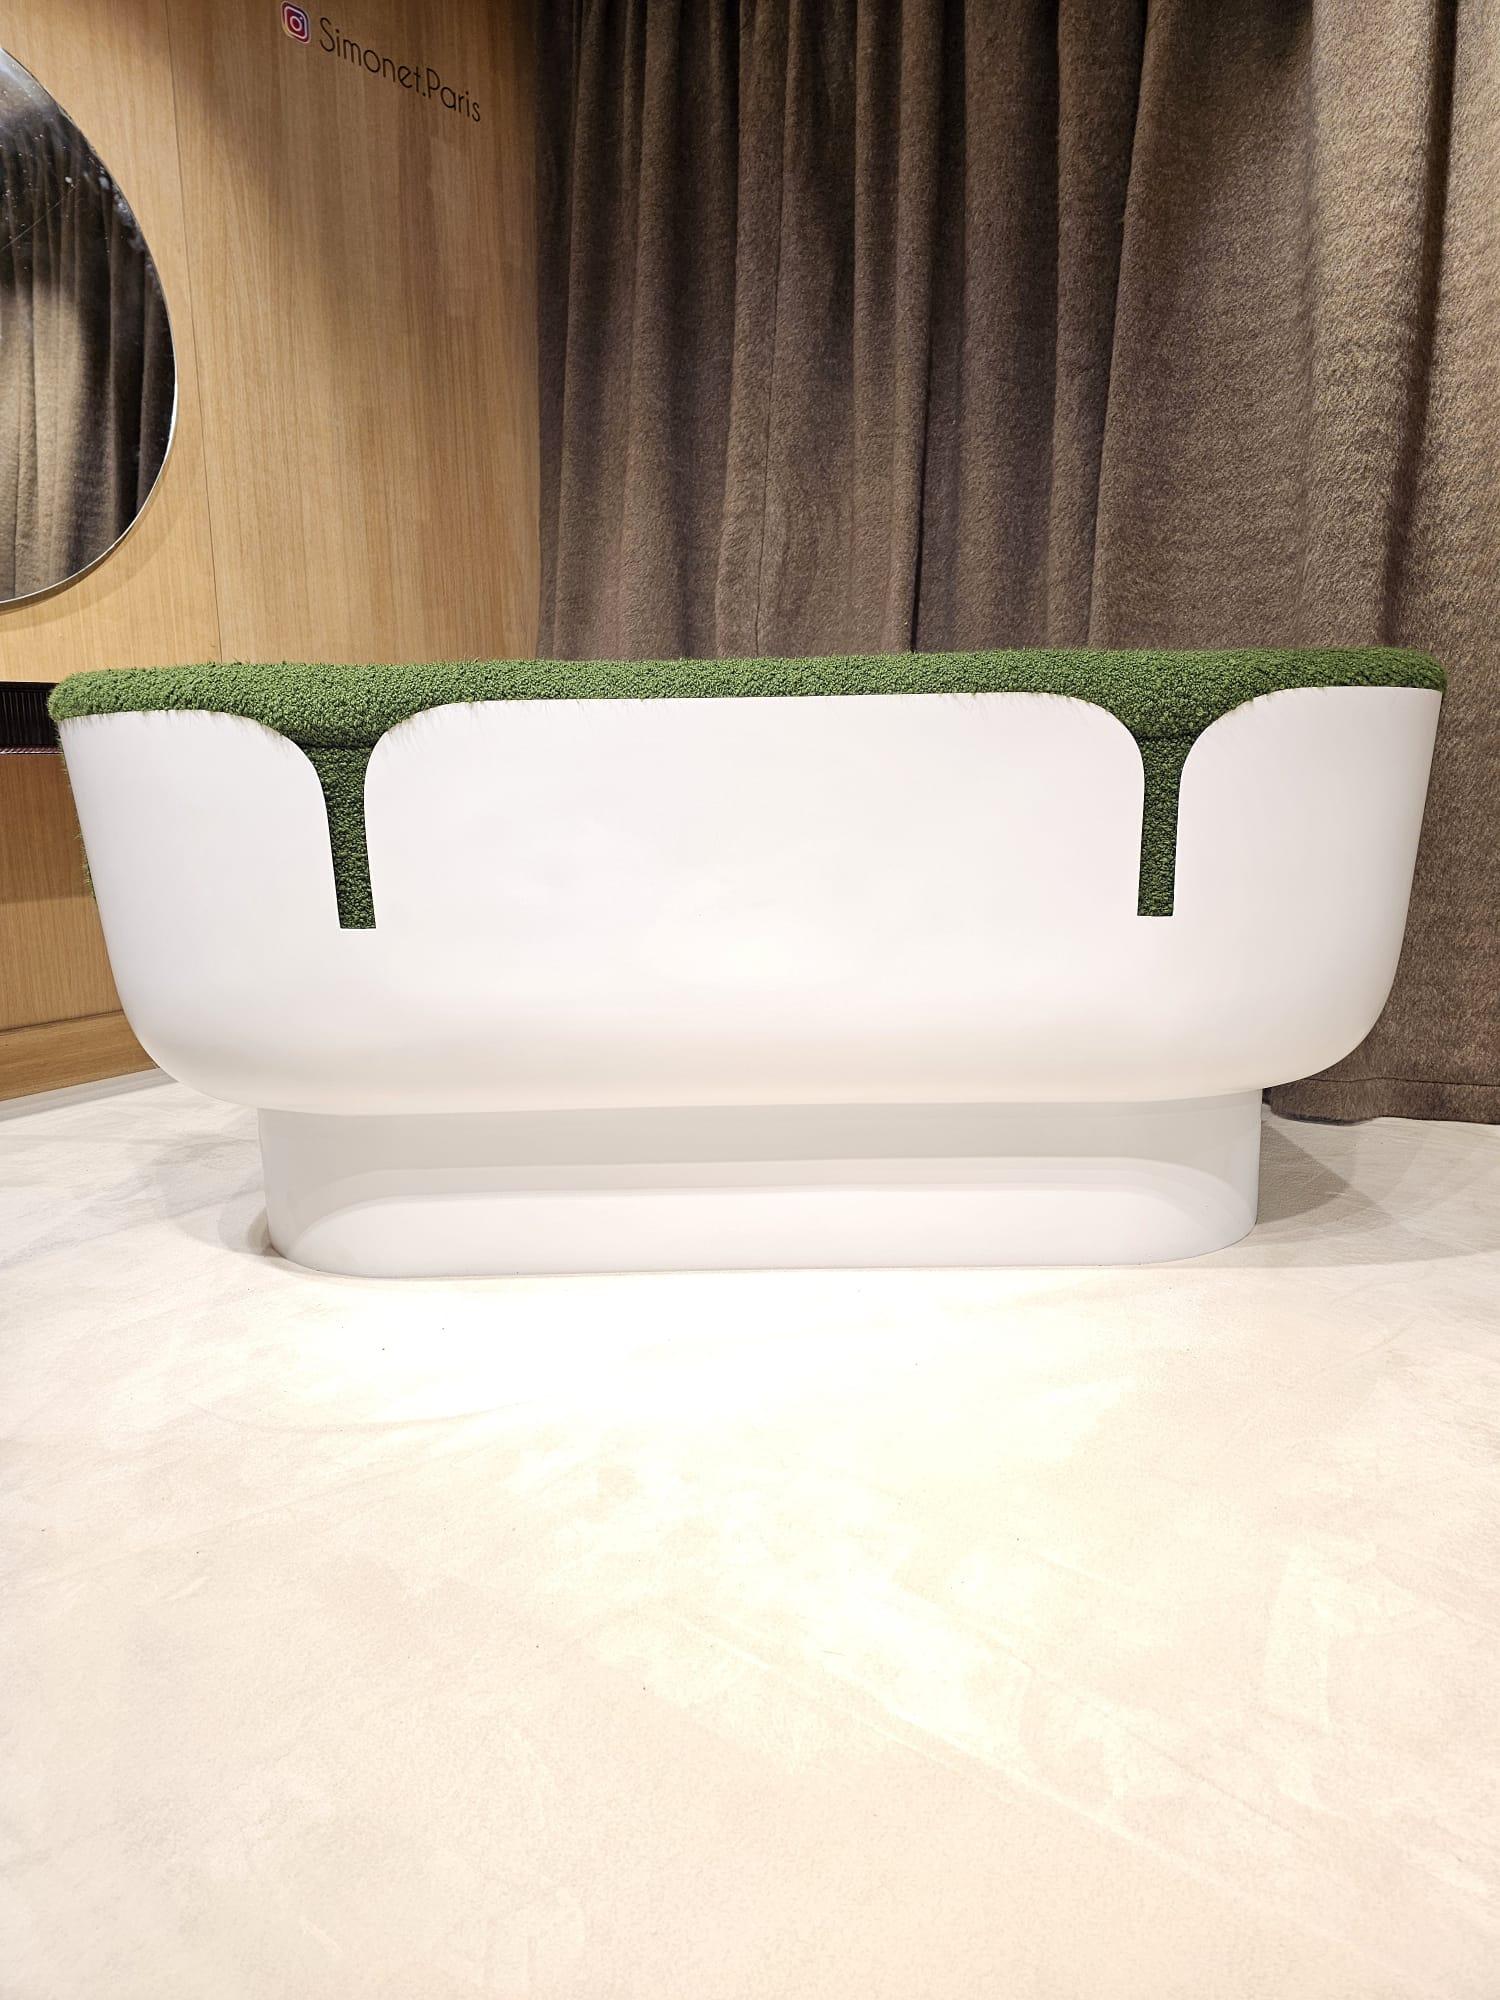 Très beau canapé de Augusto Betti par Habitat international entièrement recouvert en bouclette verte et modernisé
Laque en parfait état